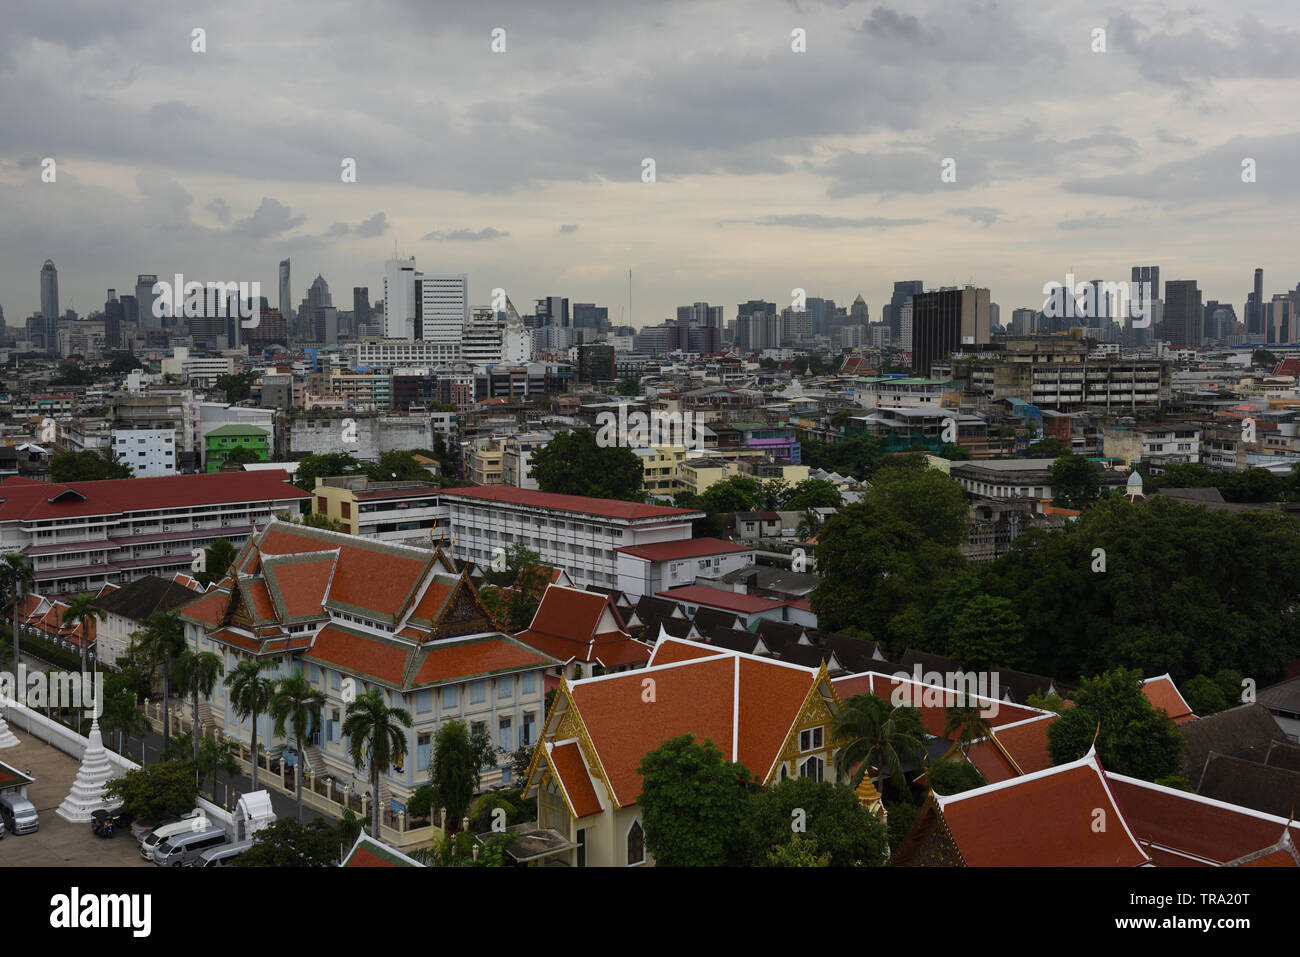 View of Bangkok from Wat Saket, Thailand Stock Photo